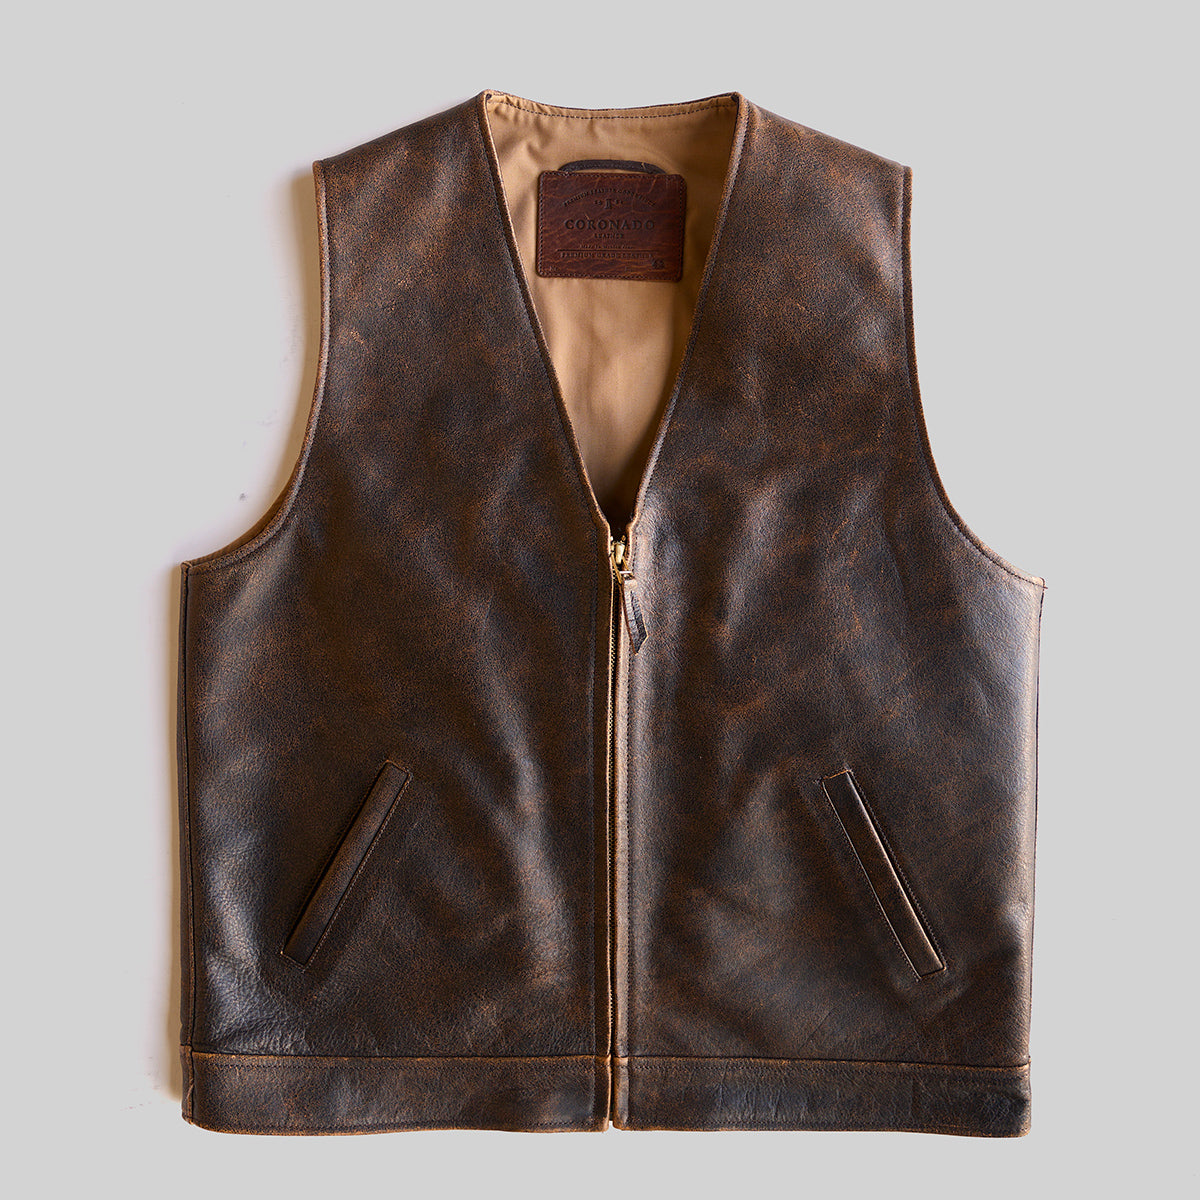 INDIANA VINTAGE ZIP VEST No.745 — Coronado Leather